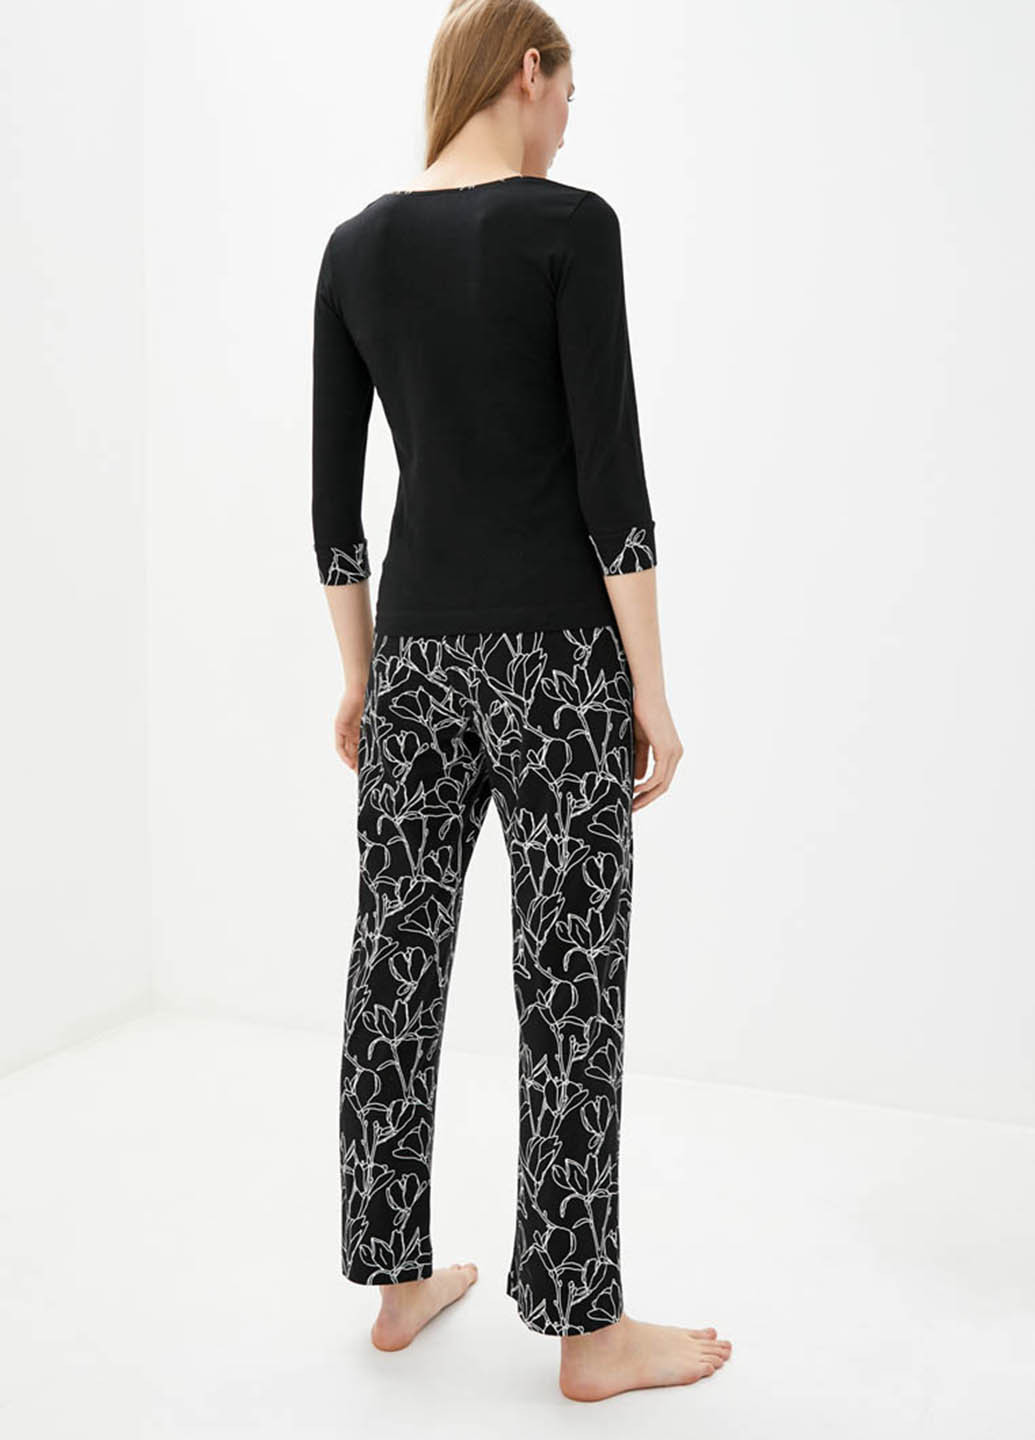 Черная всесезон пижама (лонгслив, брюки) лонгслив + брюки Promin